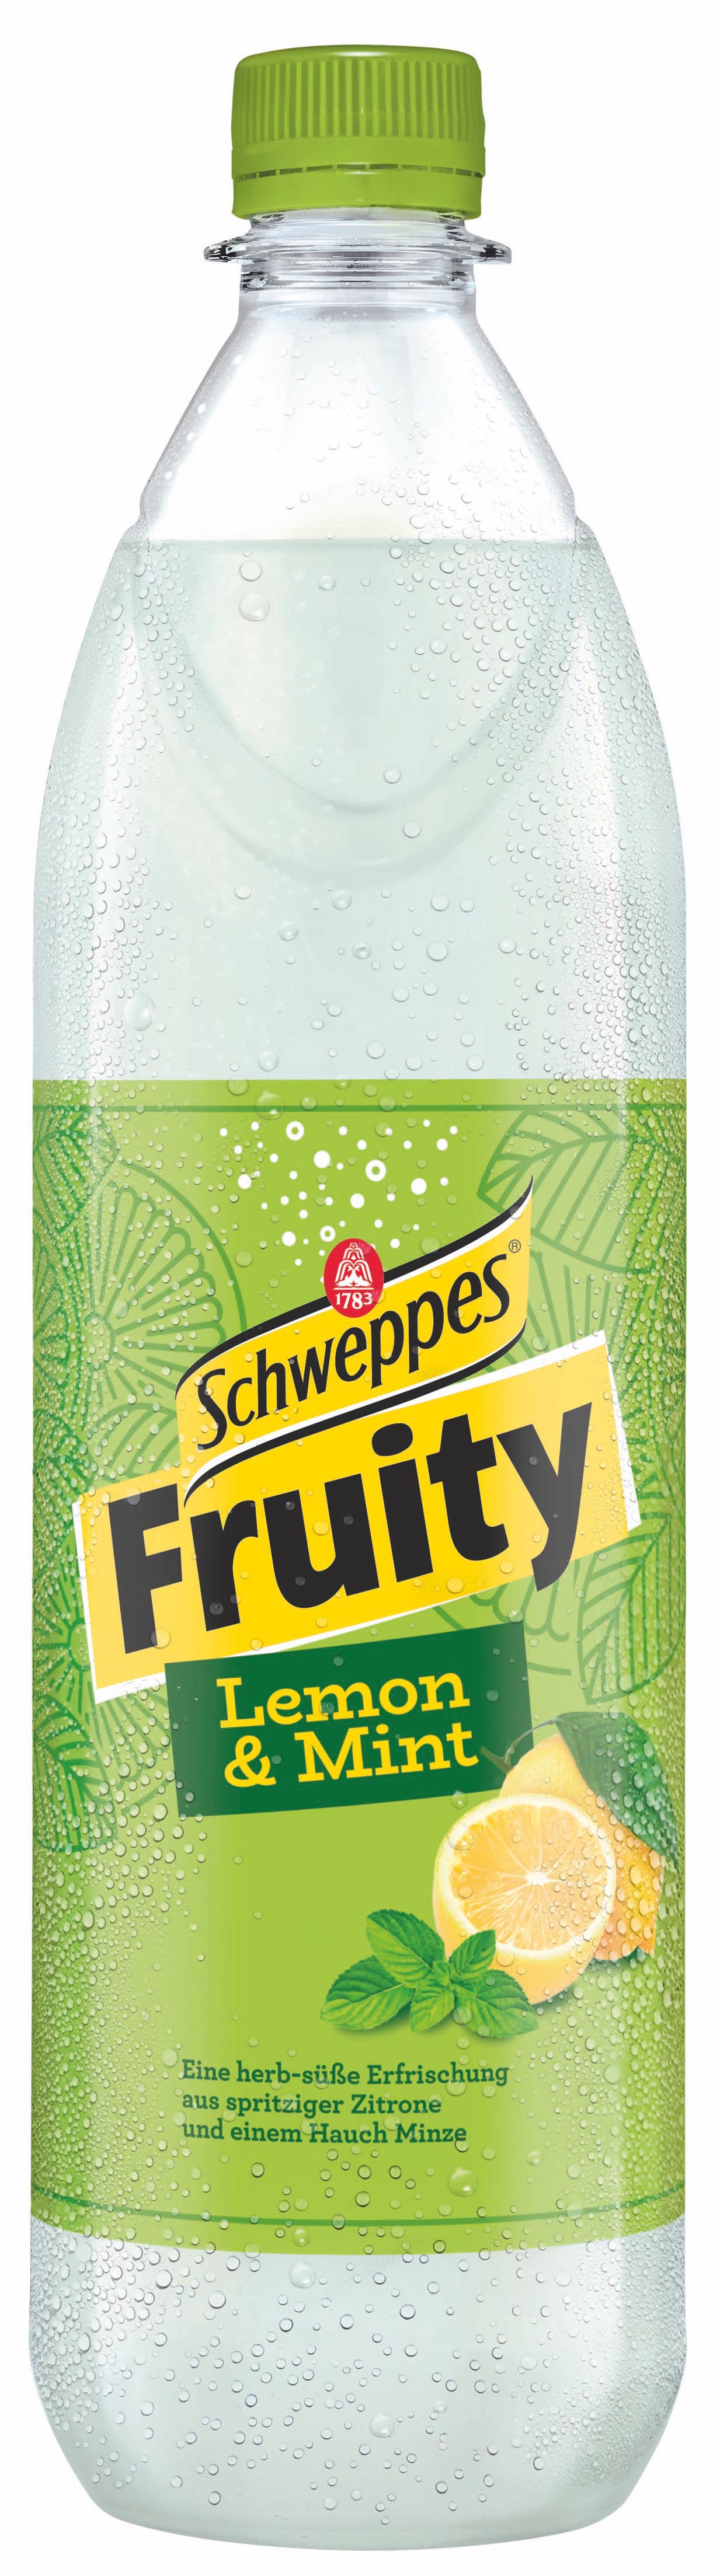 Schweppes Fruity Lemon & Mint 1,0L MEHRWEG